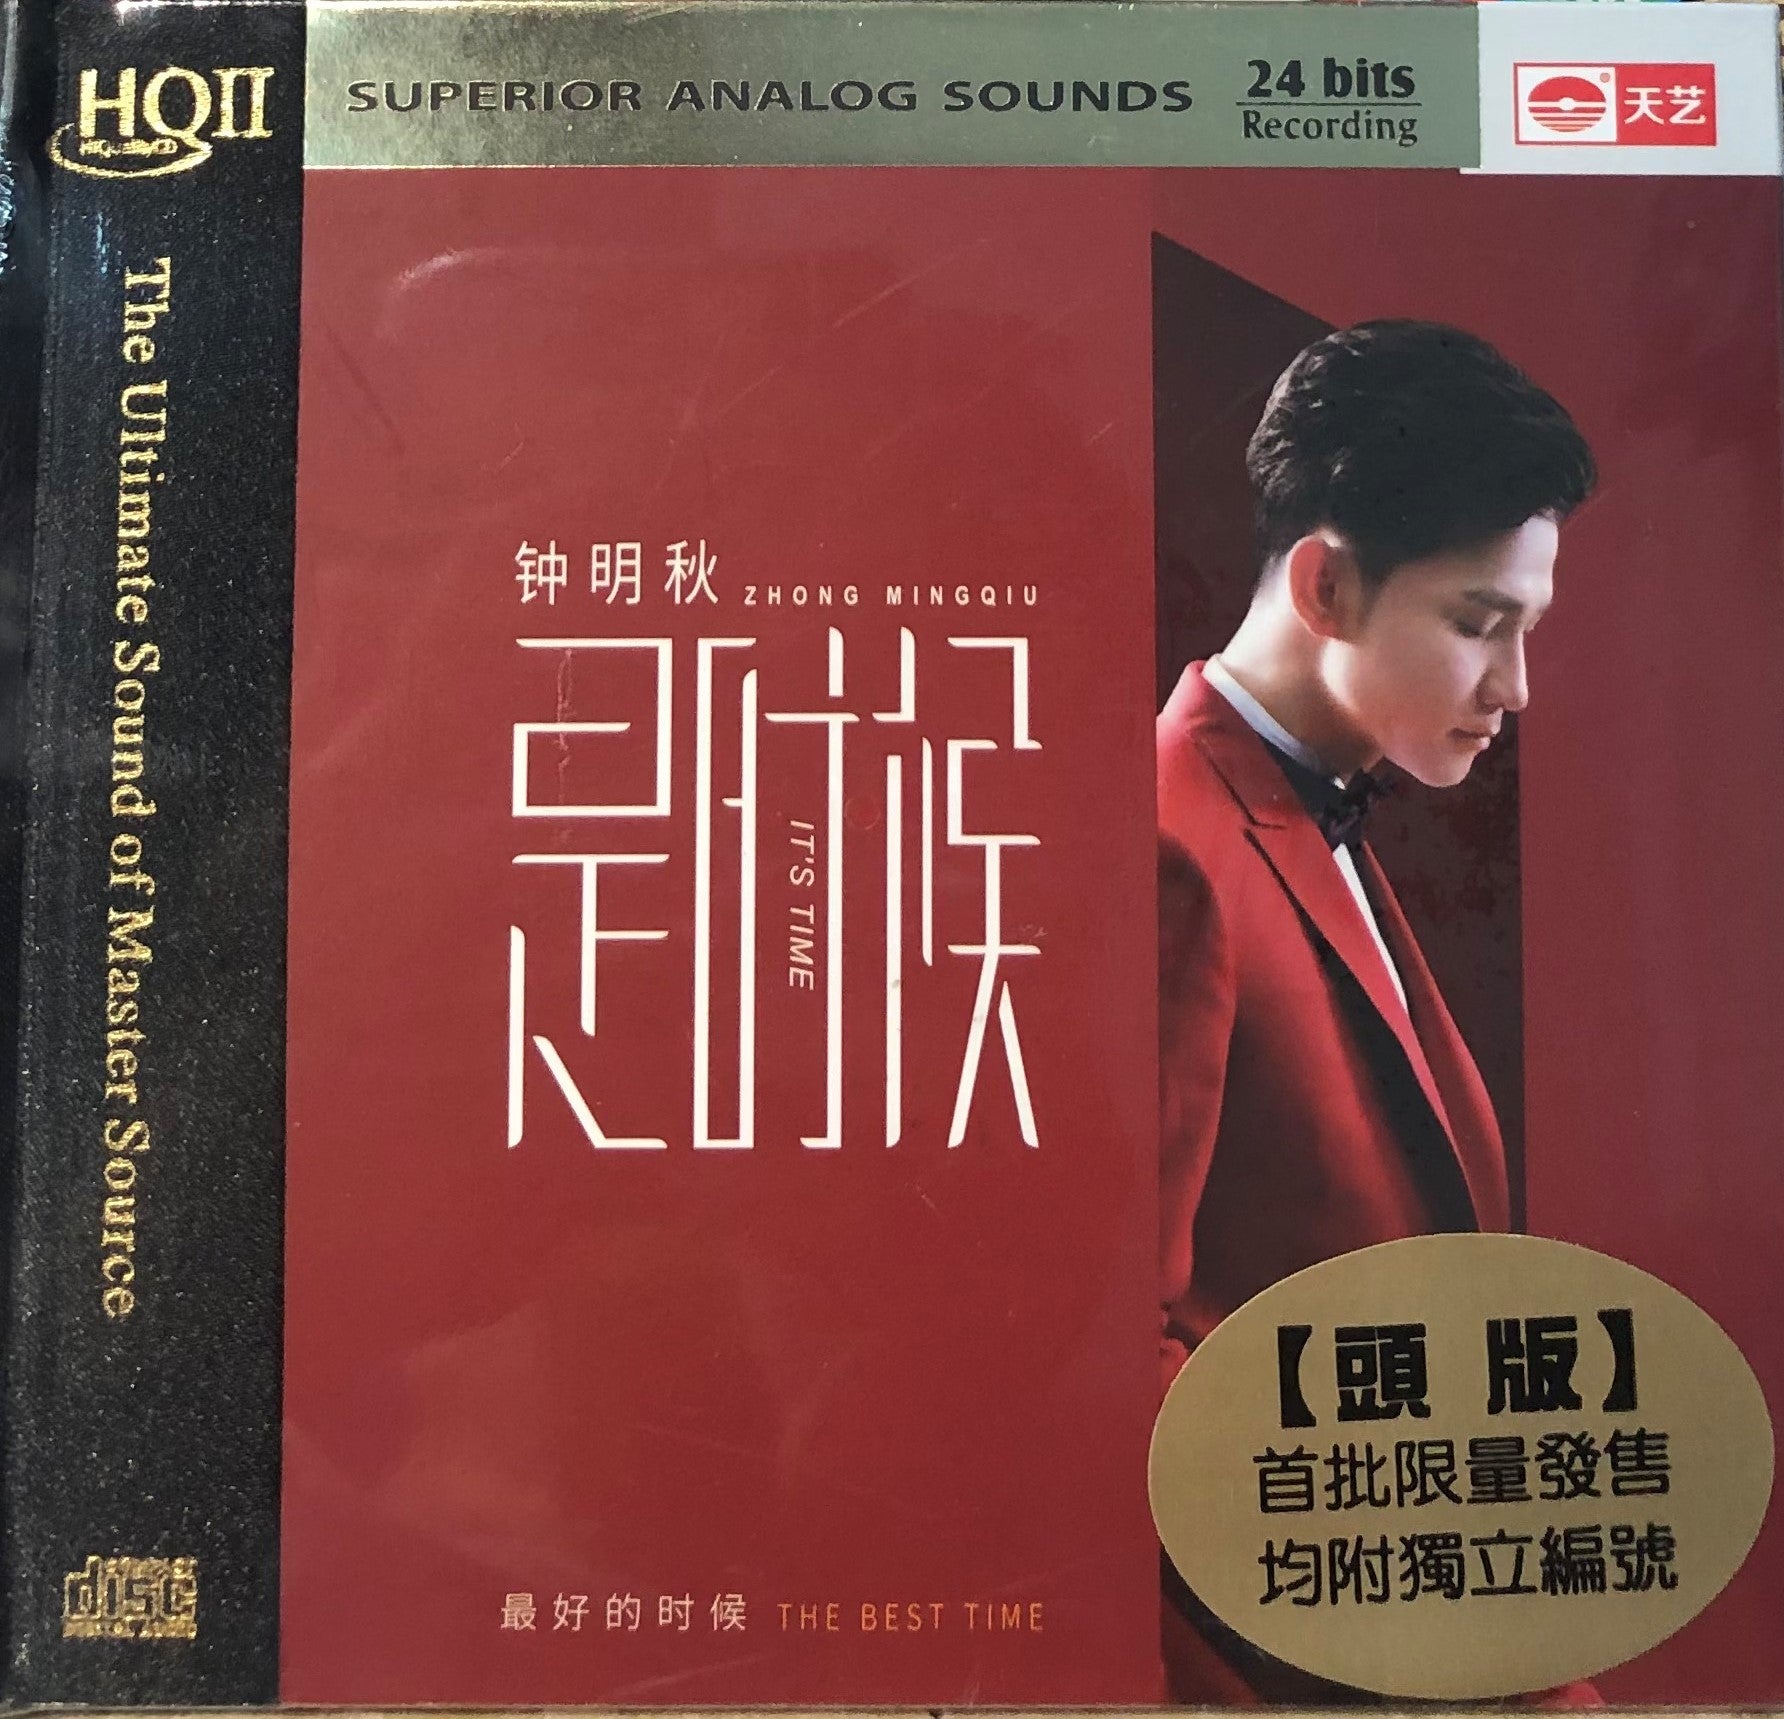 ZHONG MING QIU -鐘明秋 IT'S TIME 是時候 (HQII) CD